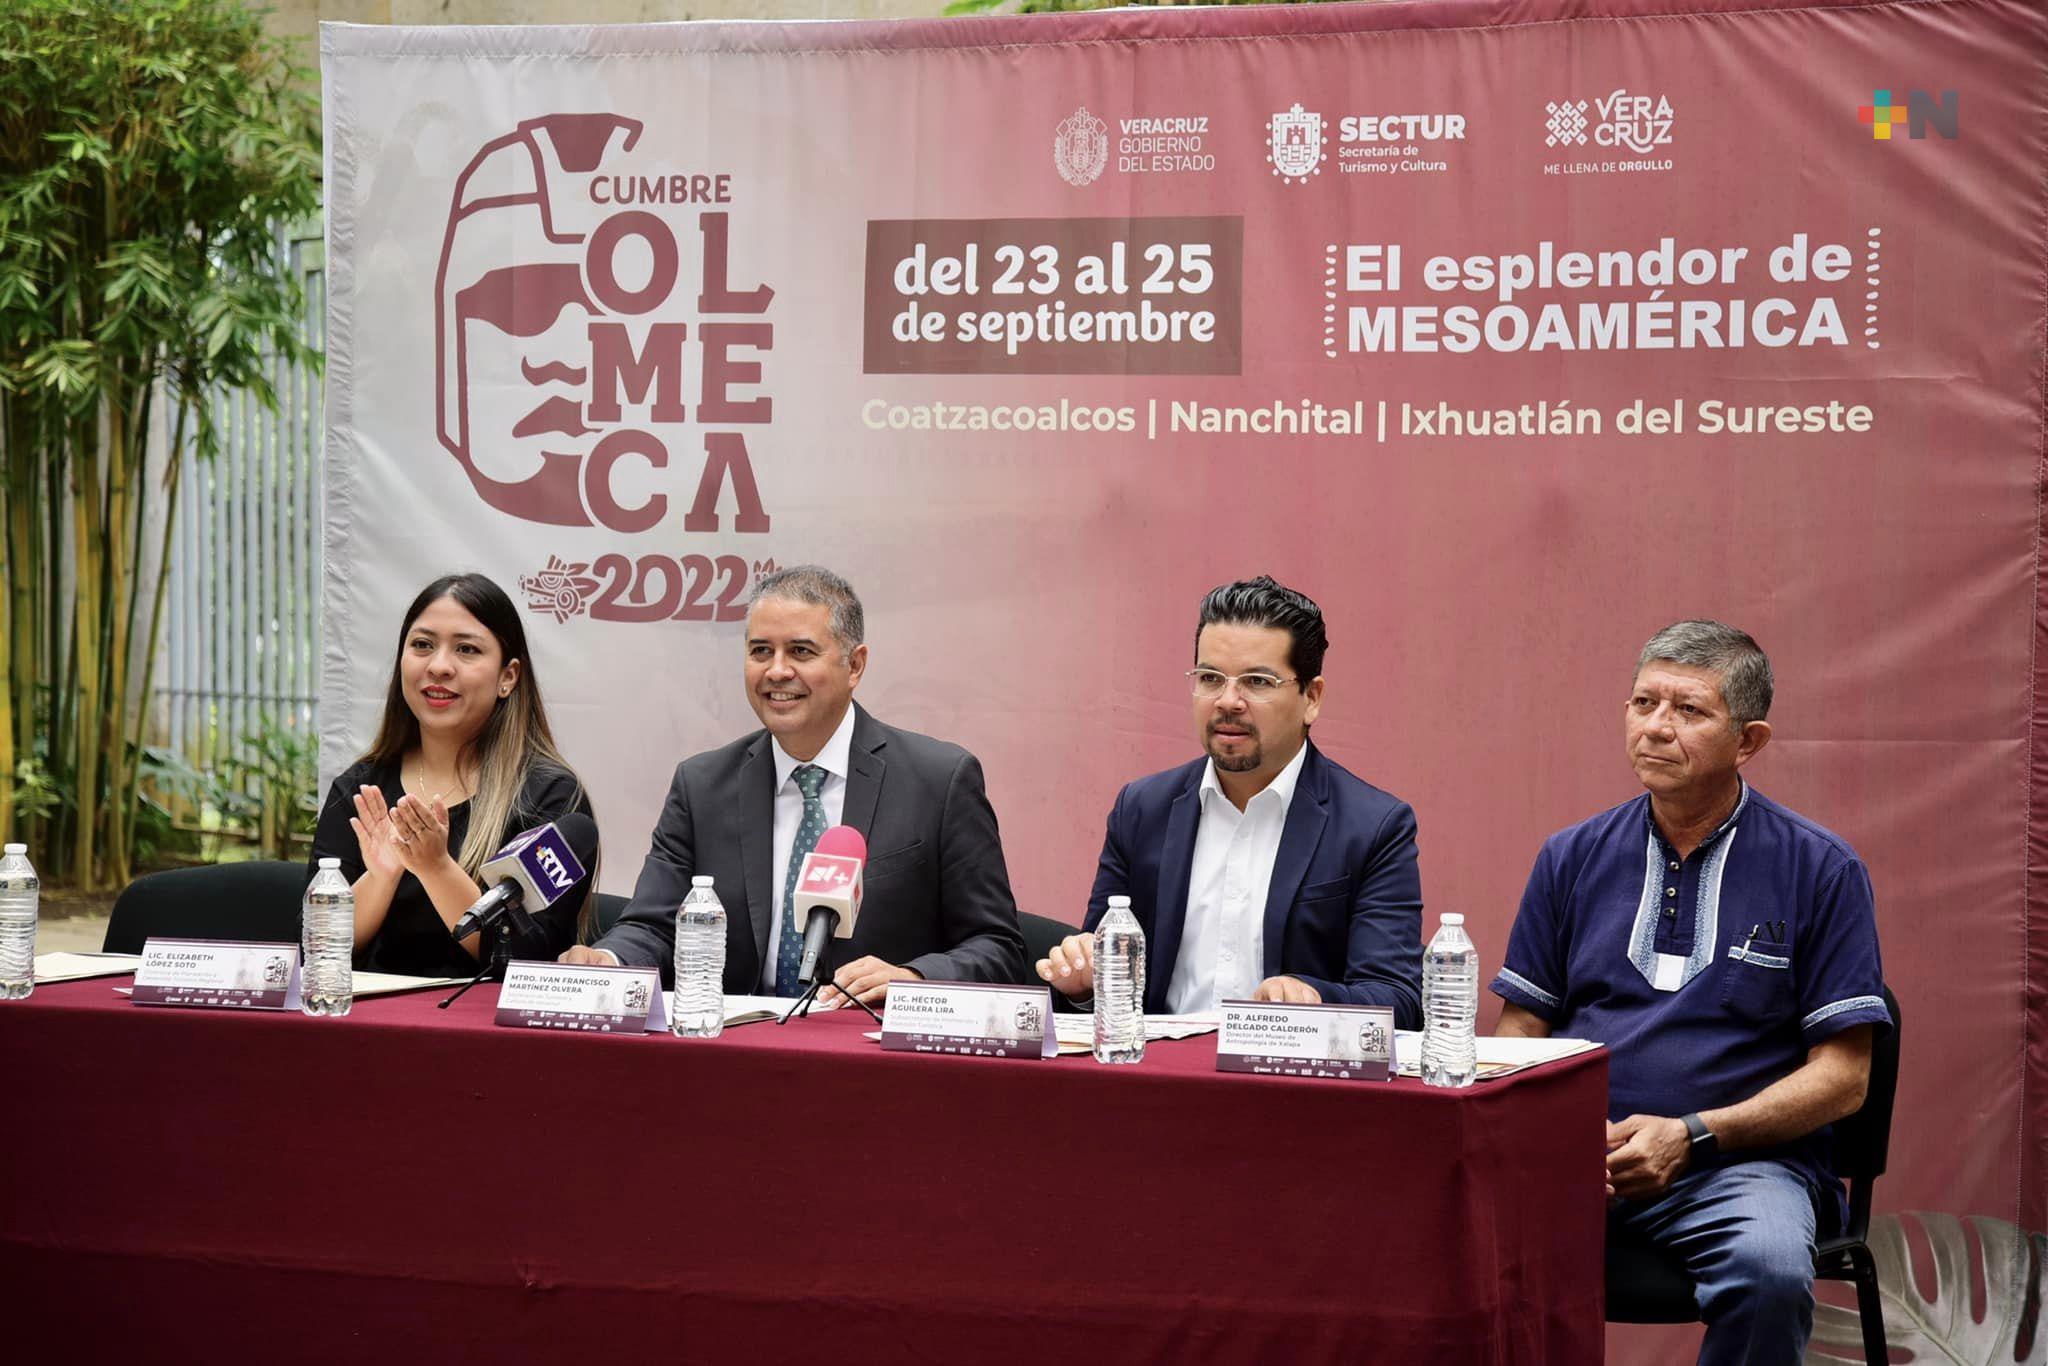 Cumbre Olmeca 2022 recibirá más de 45 mil visitantes: Iván Martínez